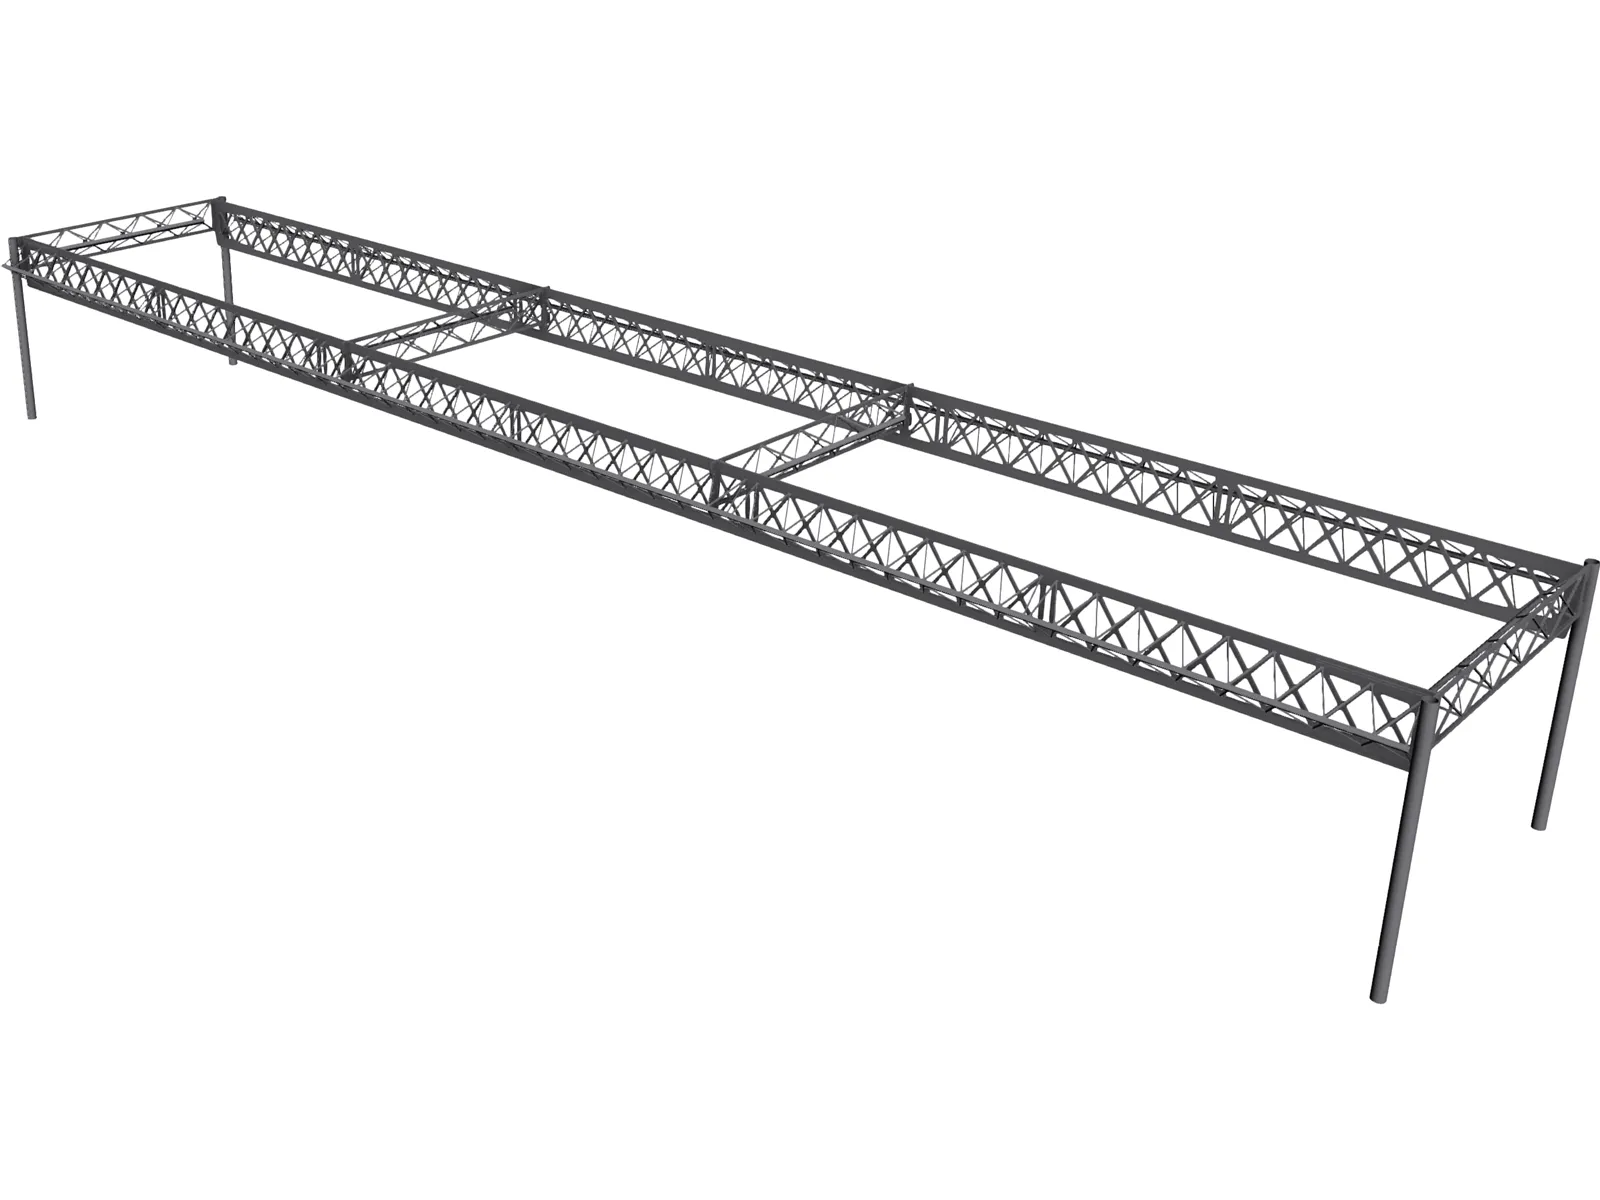 Truss Girder Bridge 3D Model